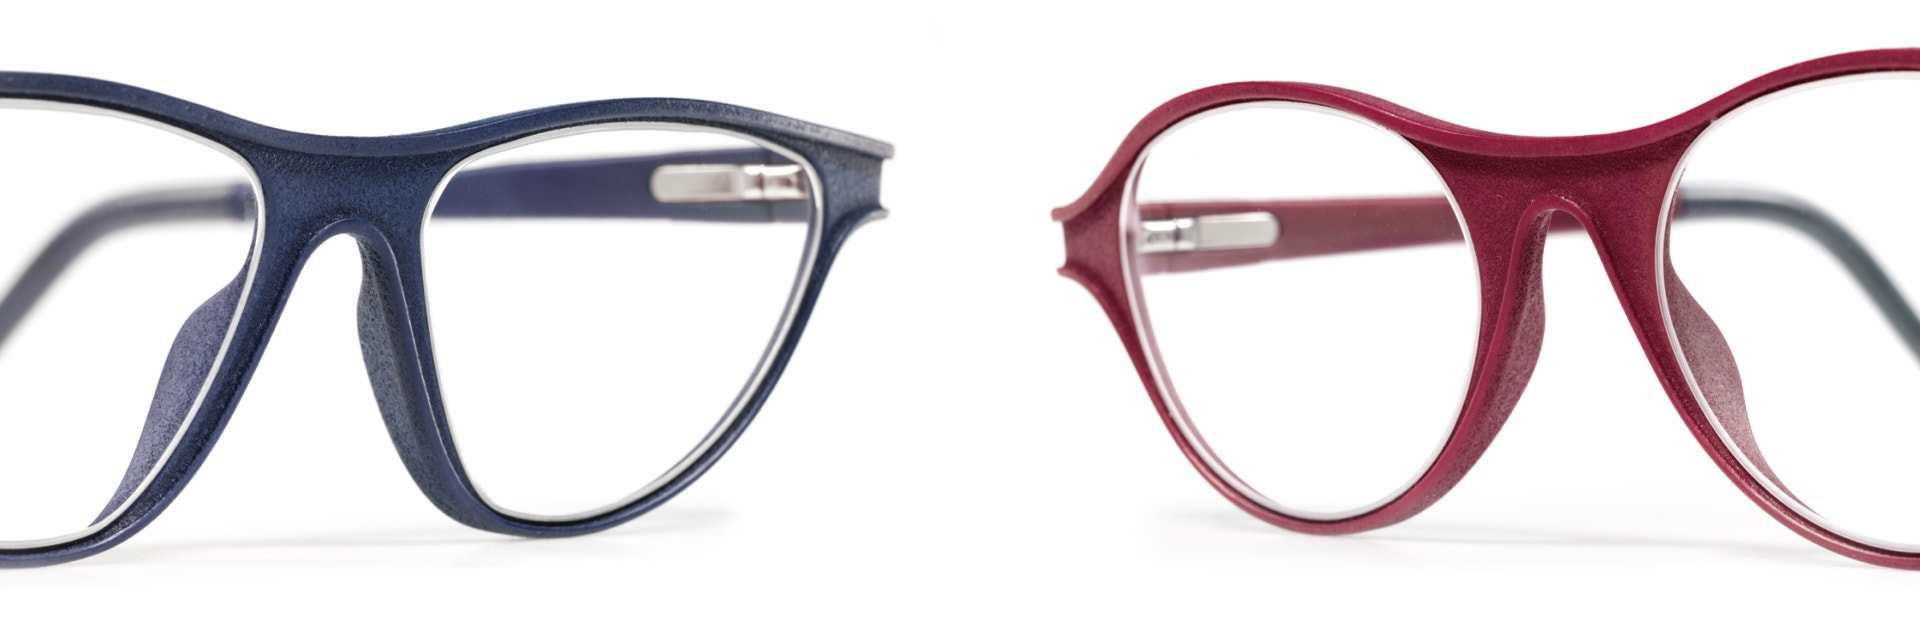 Zwei Paar 3D-gedruckte Brillengestelle in der Ausführung Luxura, eines in Jeansblau und eines in Himbeerrot